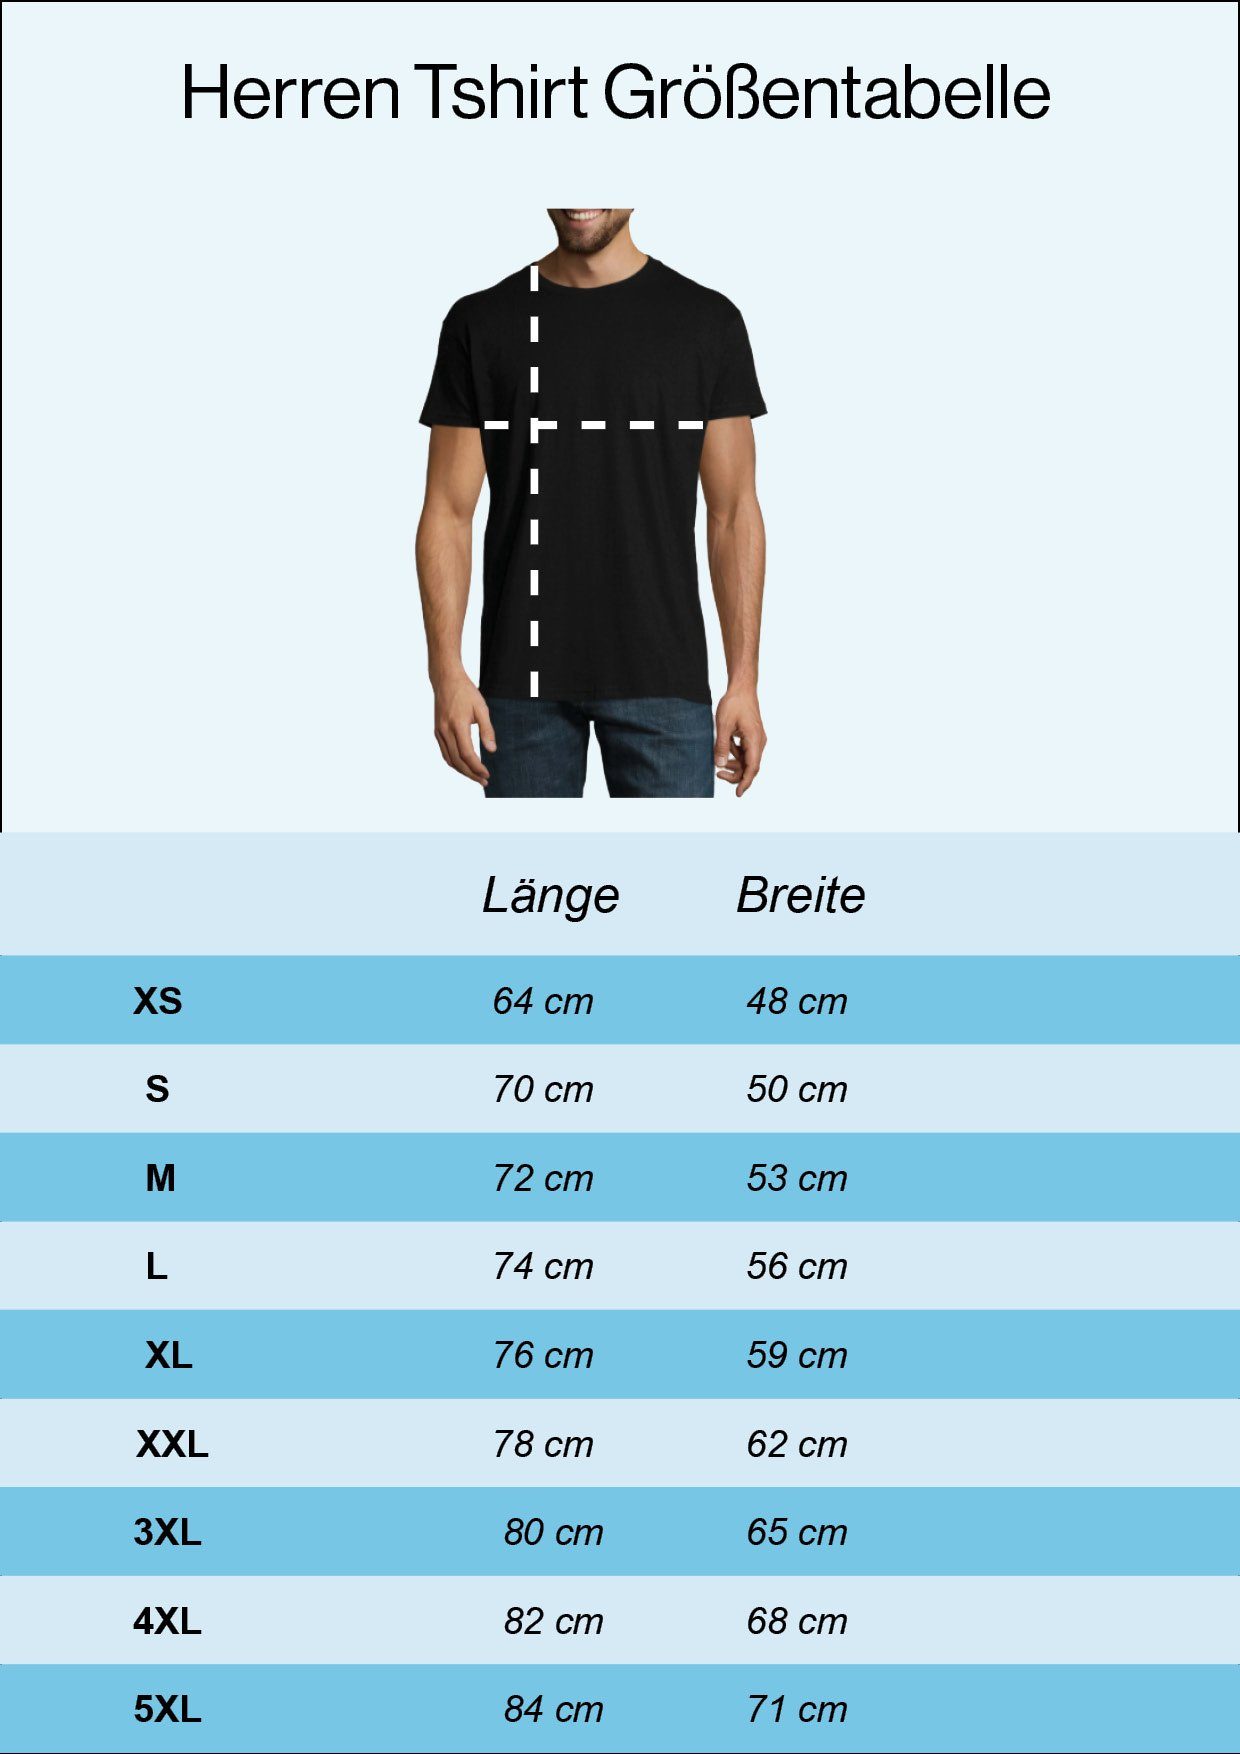 mit Schrauber Leidenschaft Schwarz Designz Shirt lustigem Spruch T-Shirt Herren Youth Aus Print